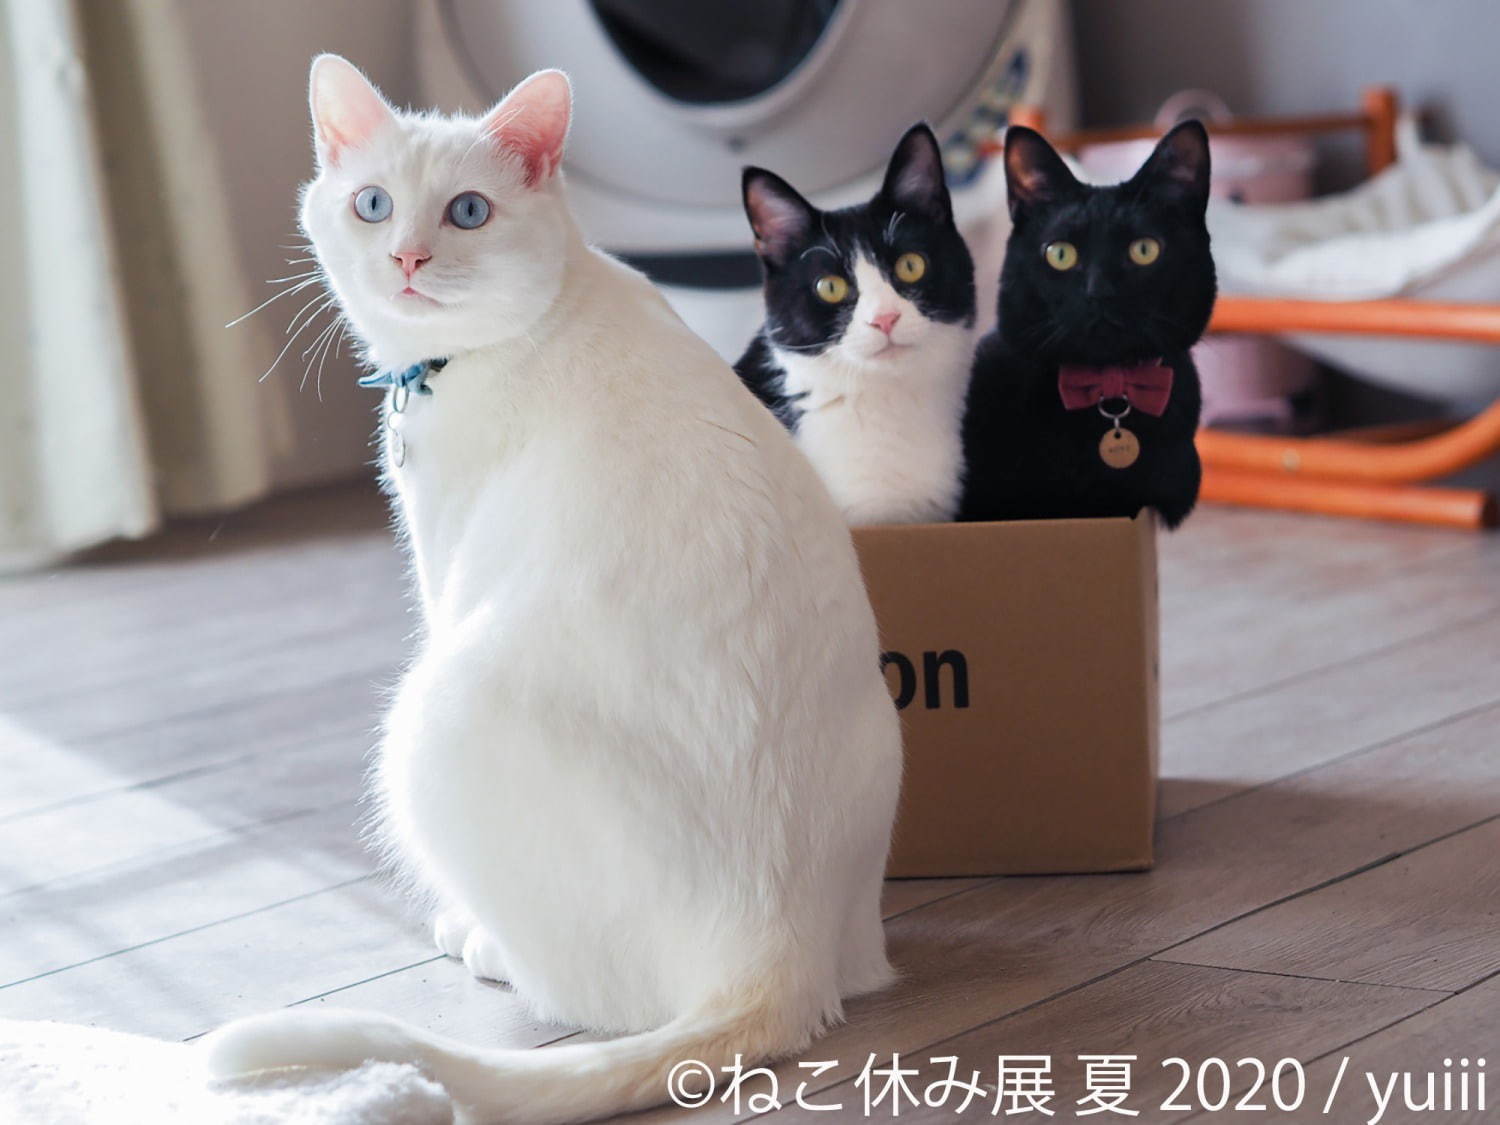 ねこ休み展 夏 東京 浅草橋で 新たな スター猫 の作品展示が追加 猫グッズも ファッションプレス